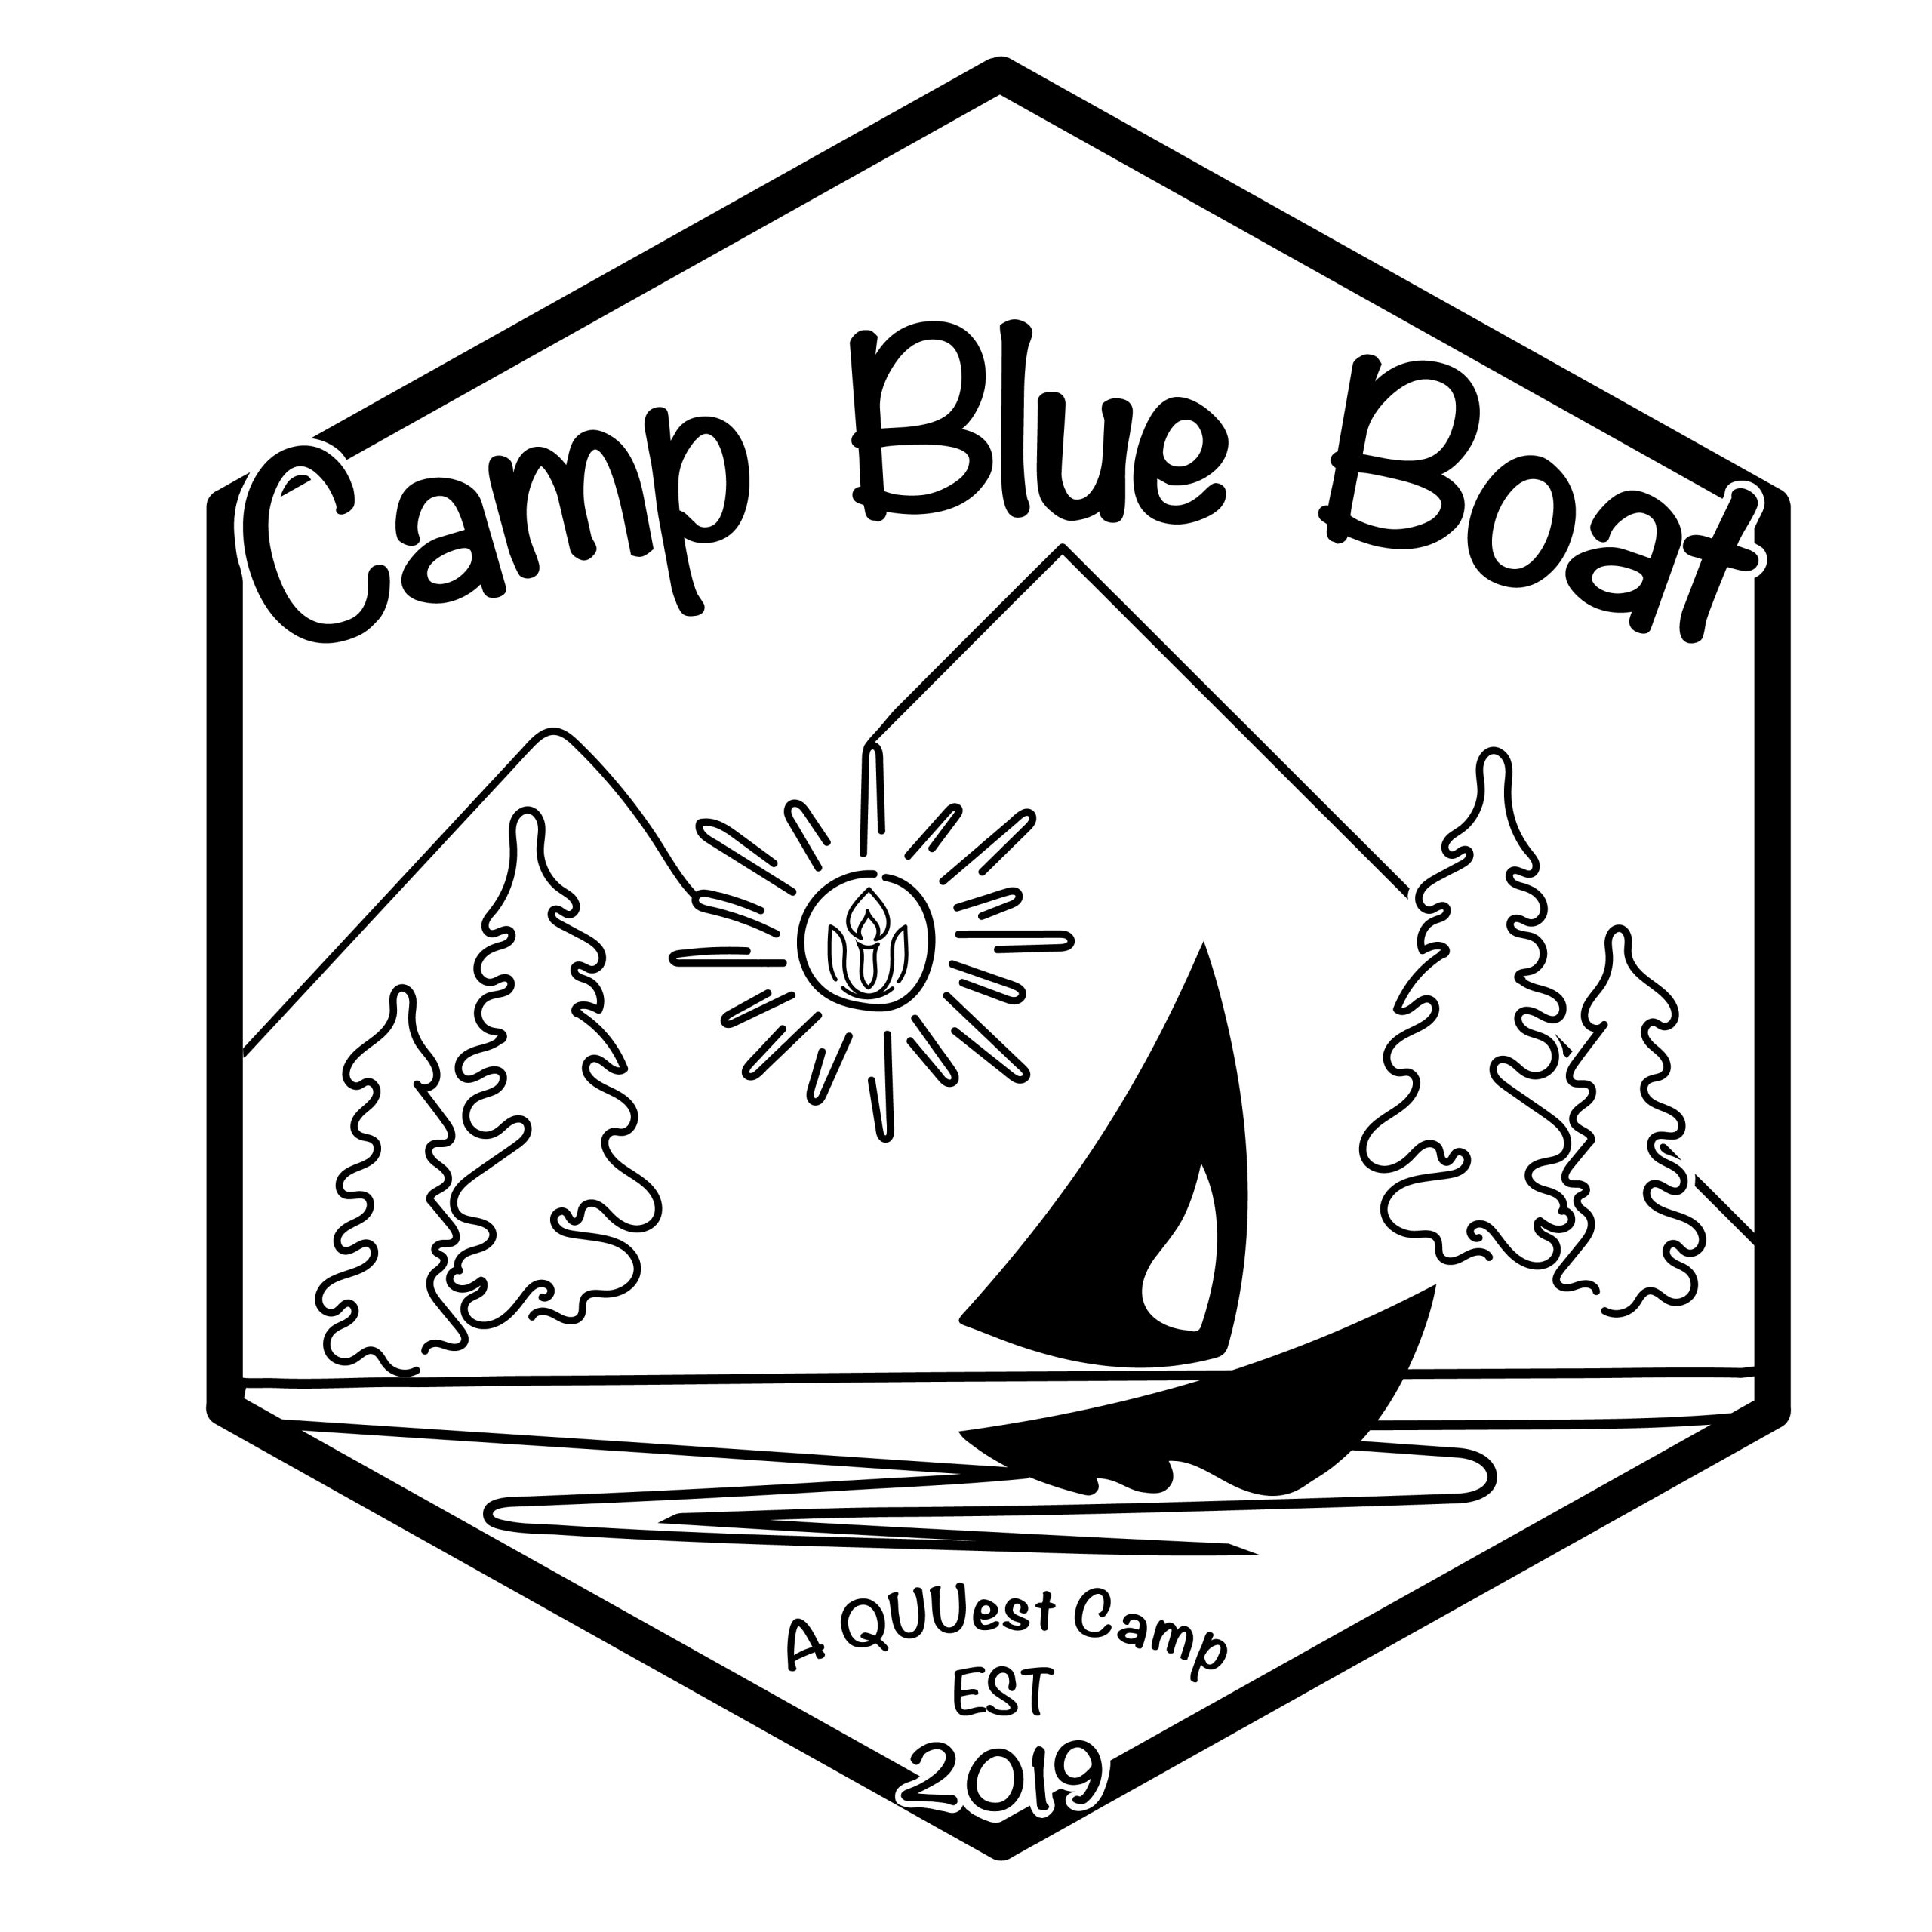 Register for Camp Blue Boat!